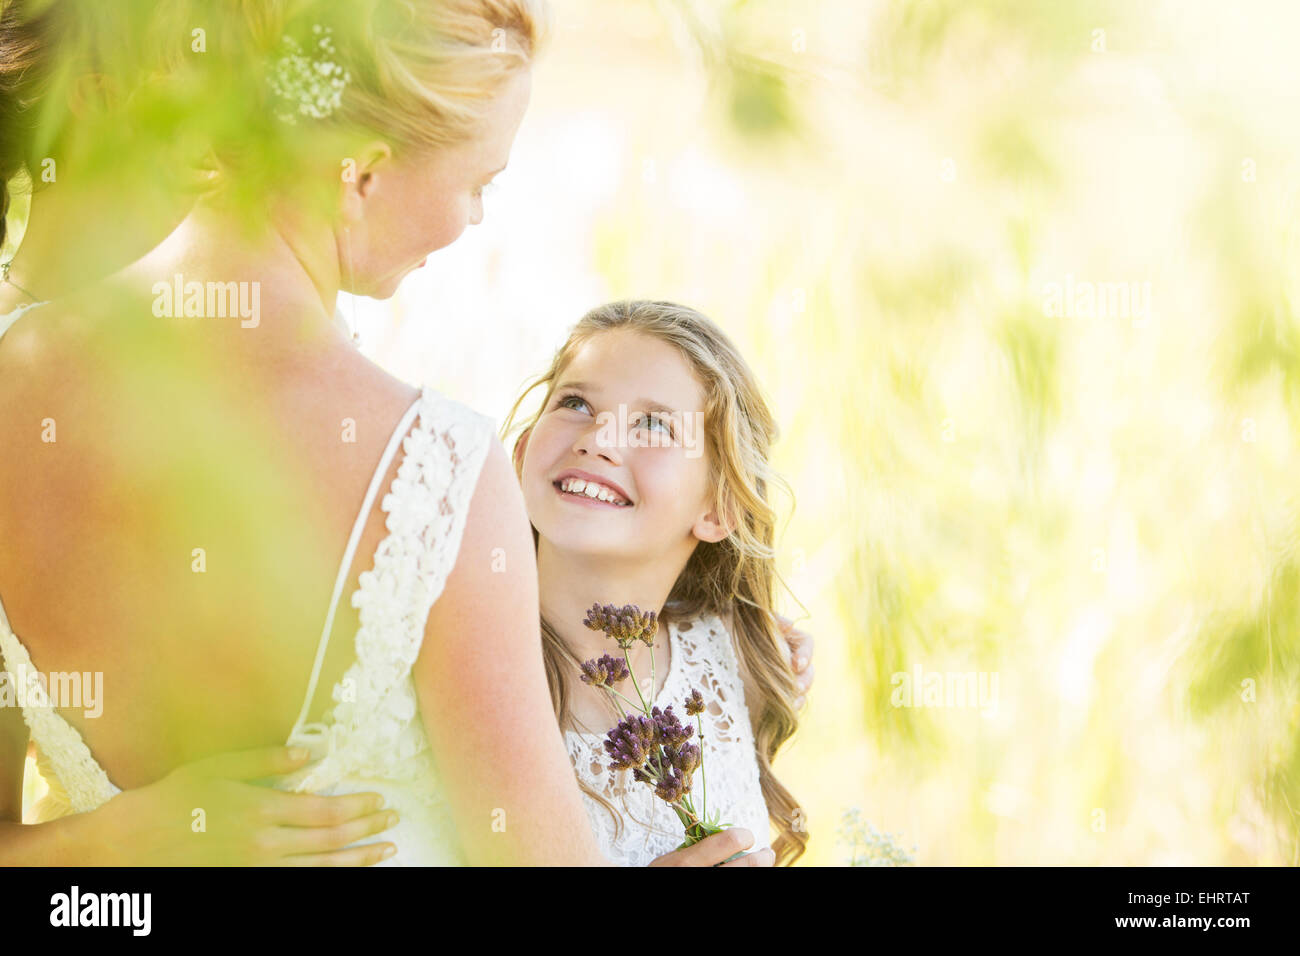 Lächelnde Brautjungfer mit Blumen und Braut während der Hochzeitsfeier im Garten Stockfoto